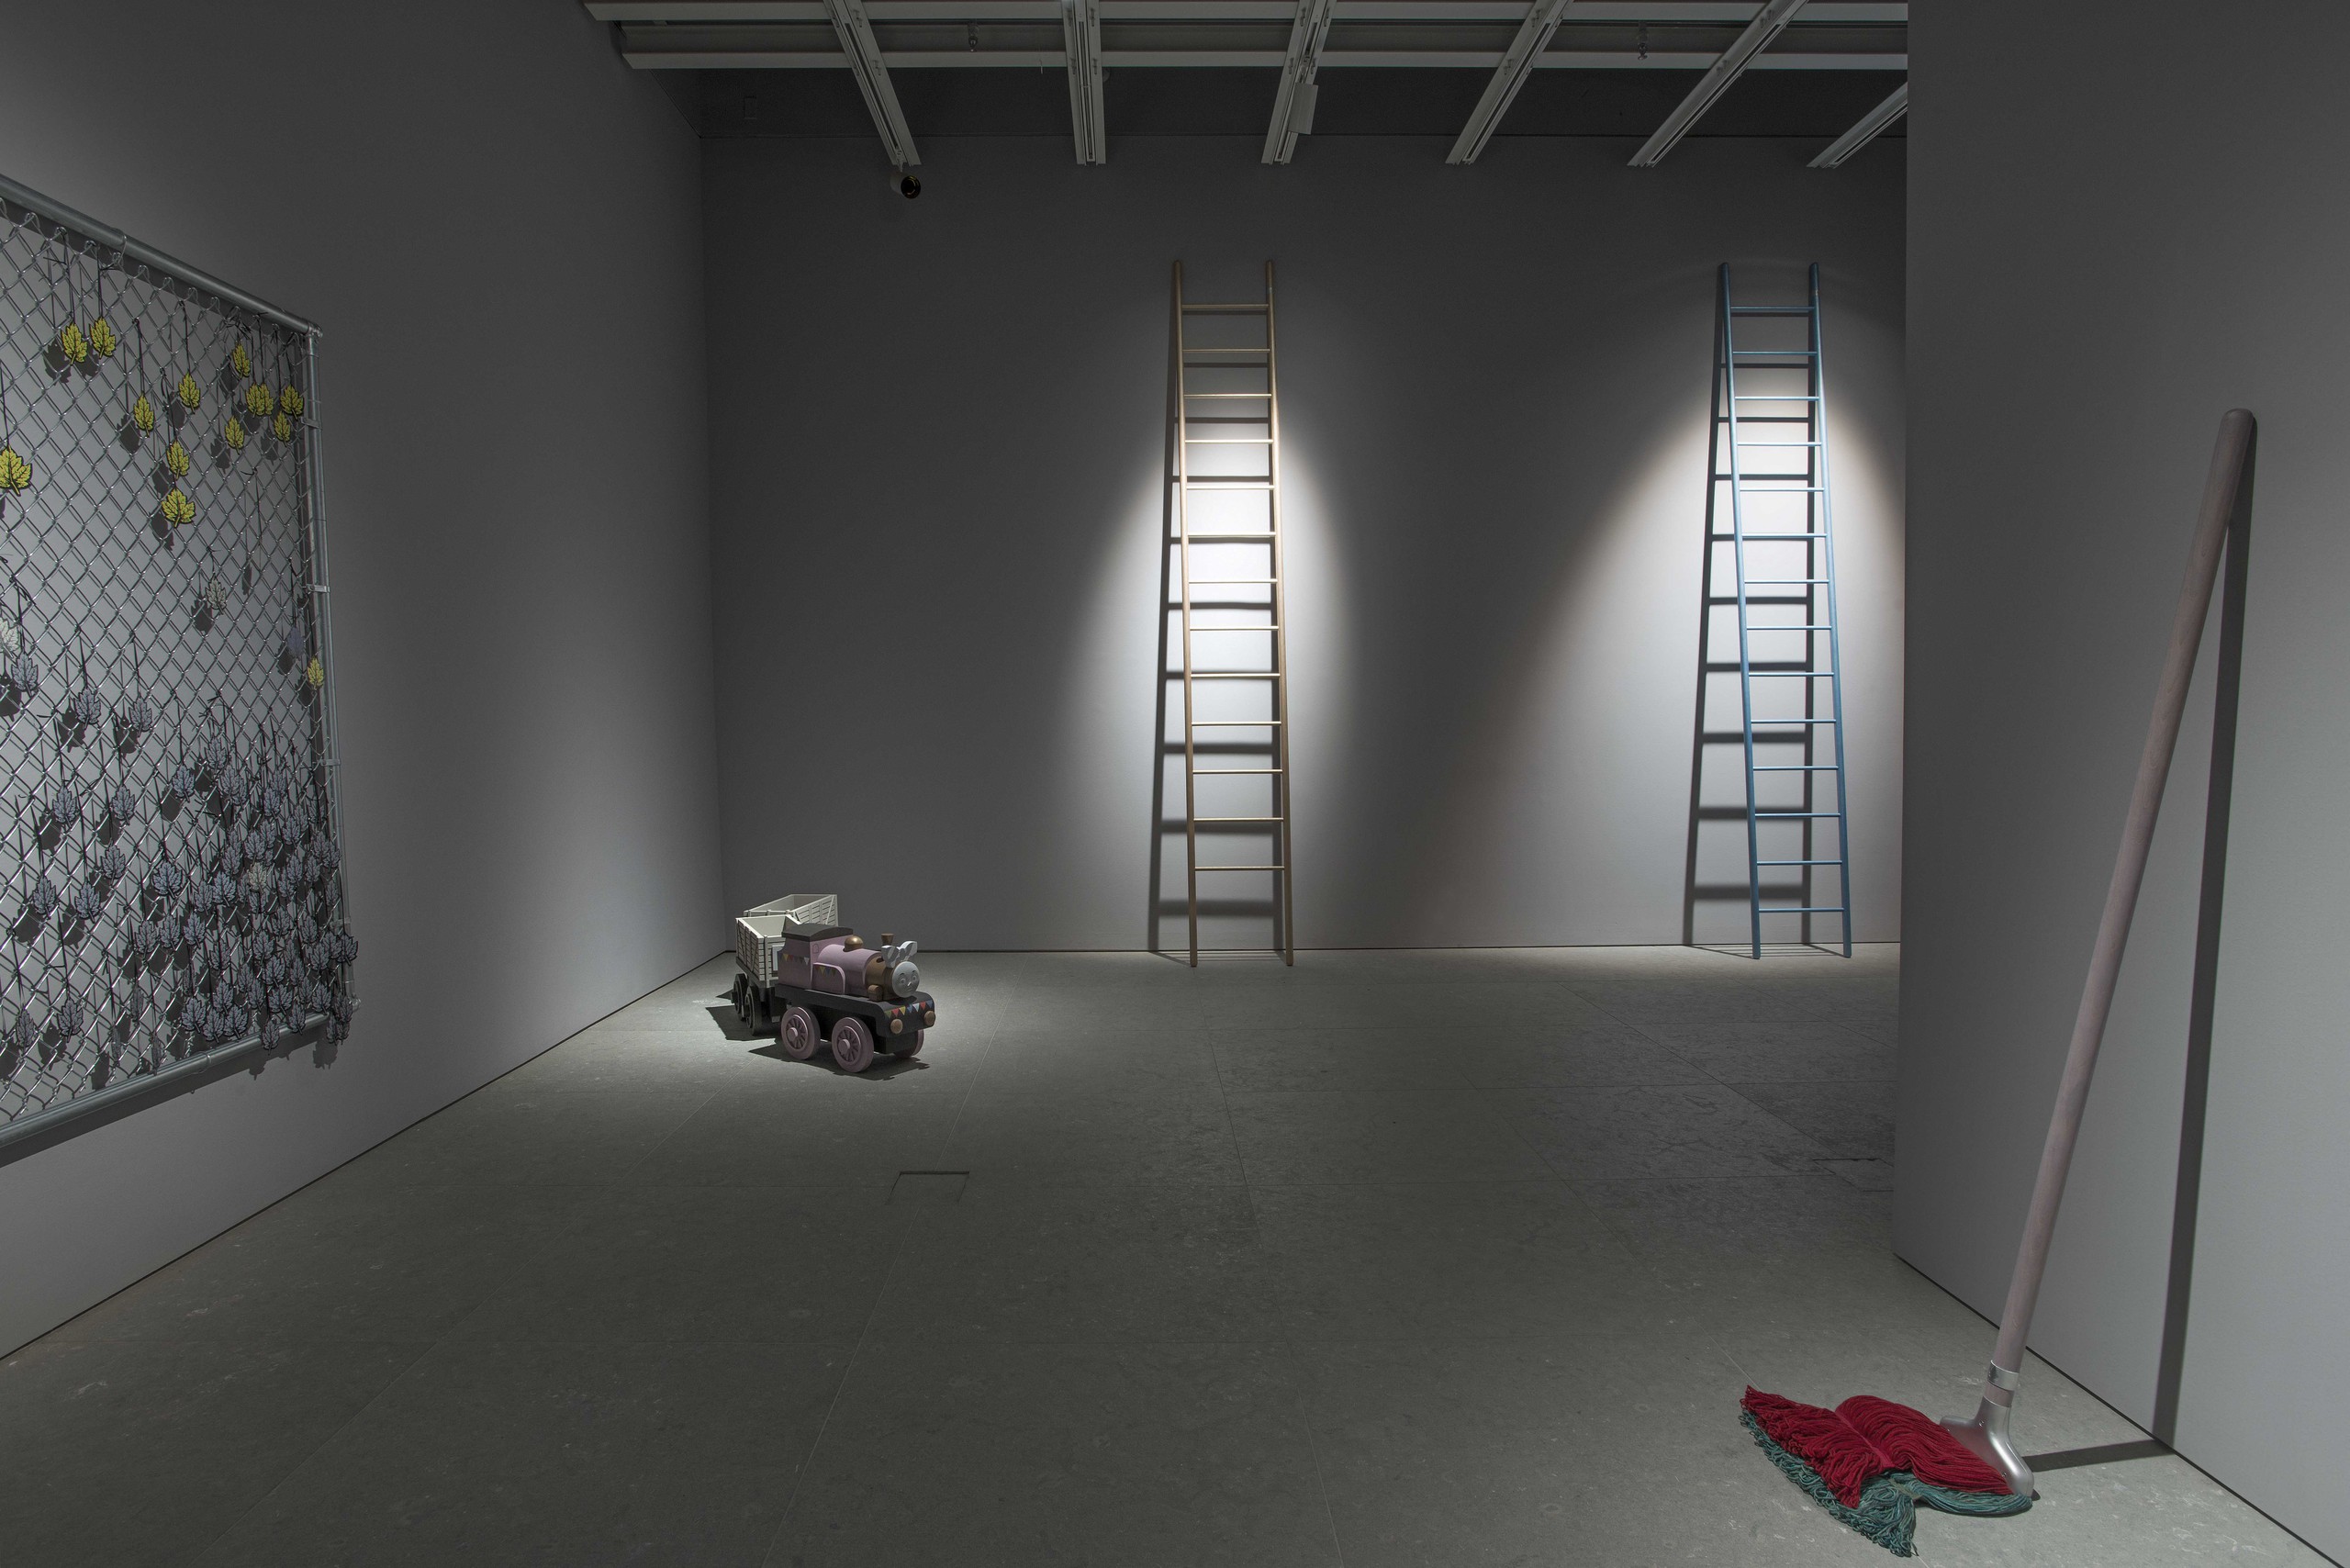 Installation view, Brig Und Ladder, Whitney Museum of American Art, New York, 2017